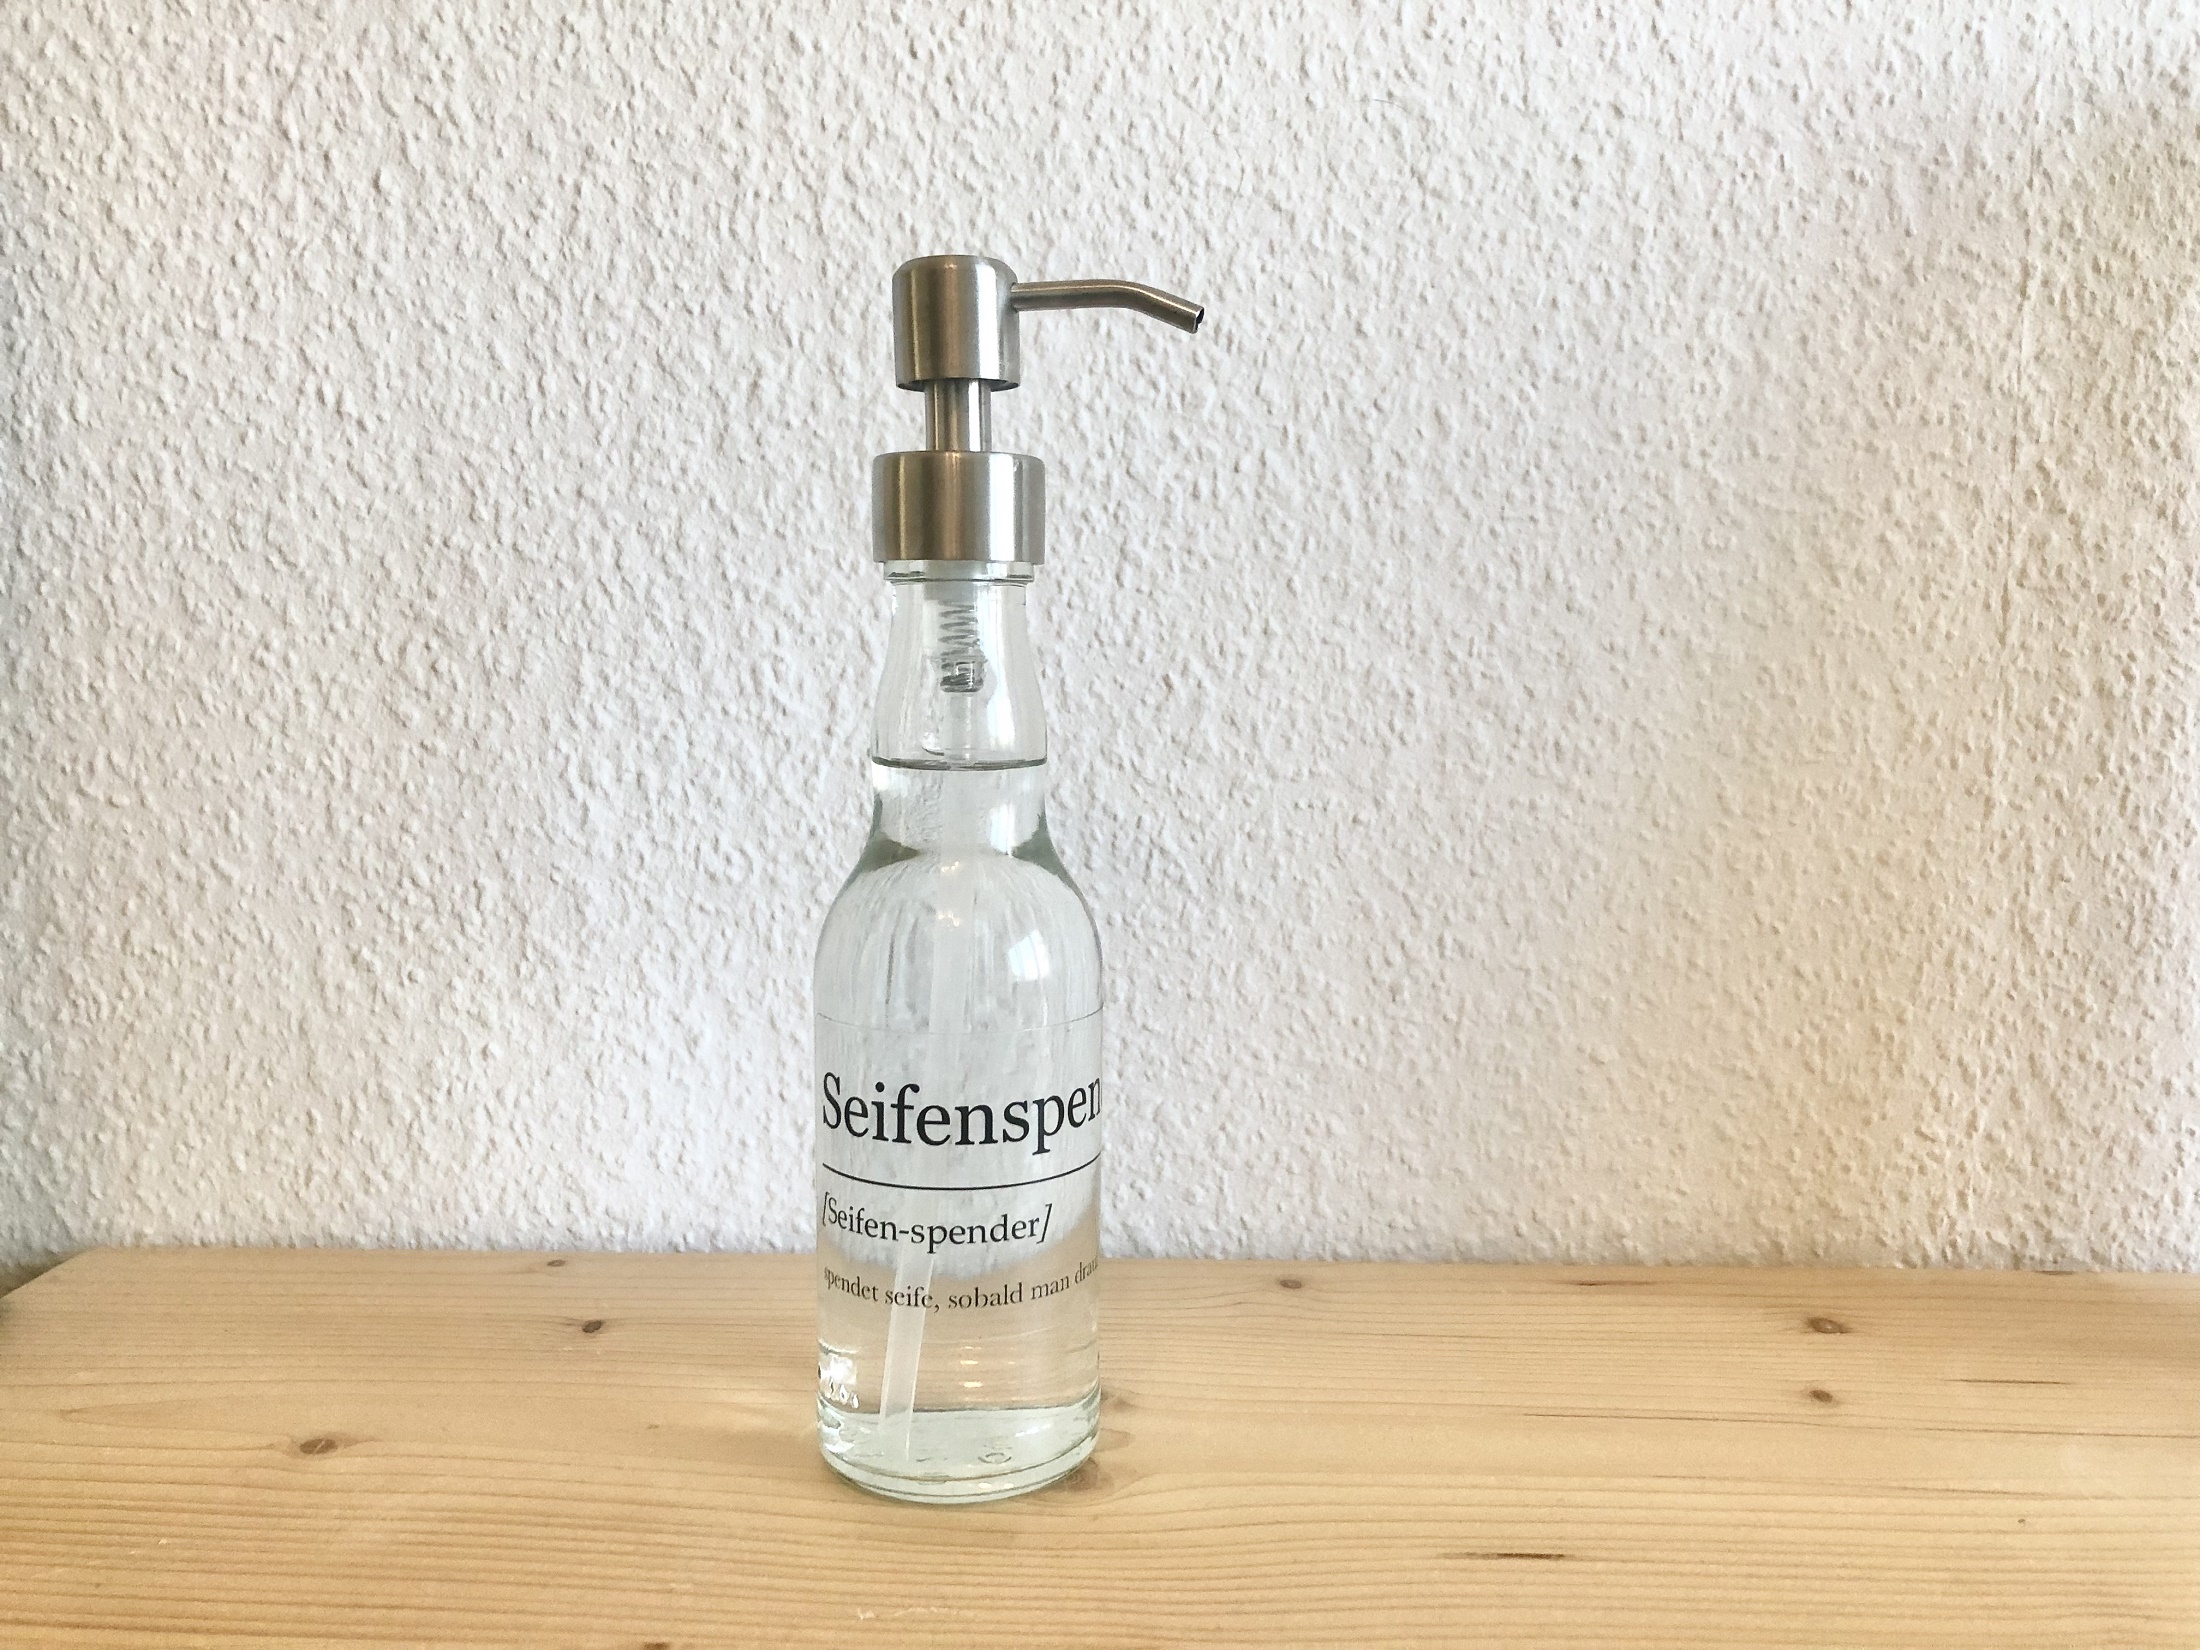 Seifenspender, gefertigt aus alten Glasflaschen durch das Start Up Seferna.